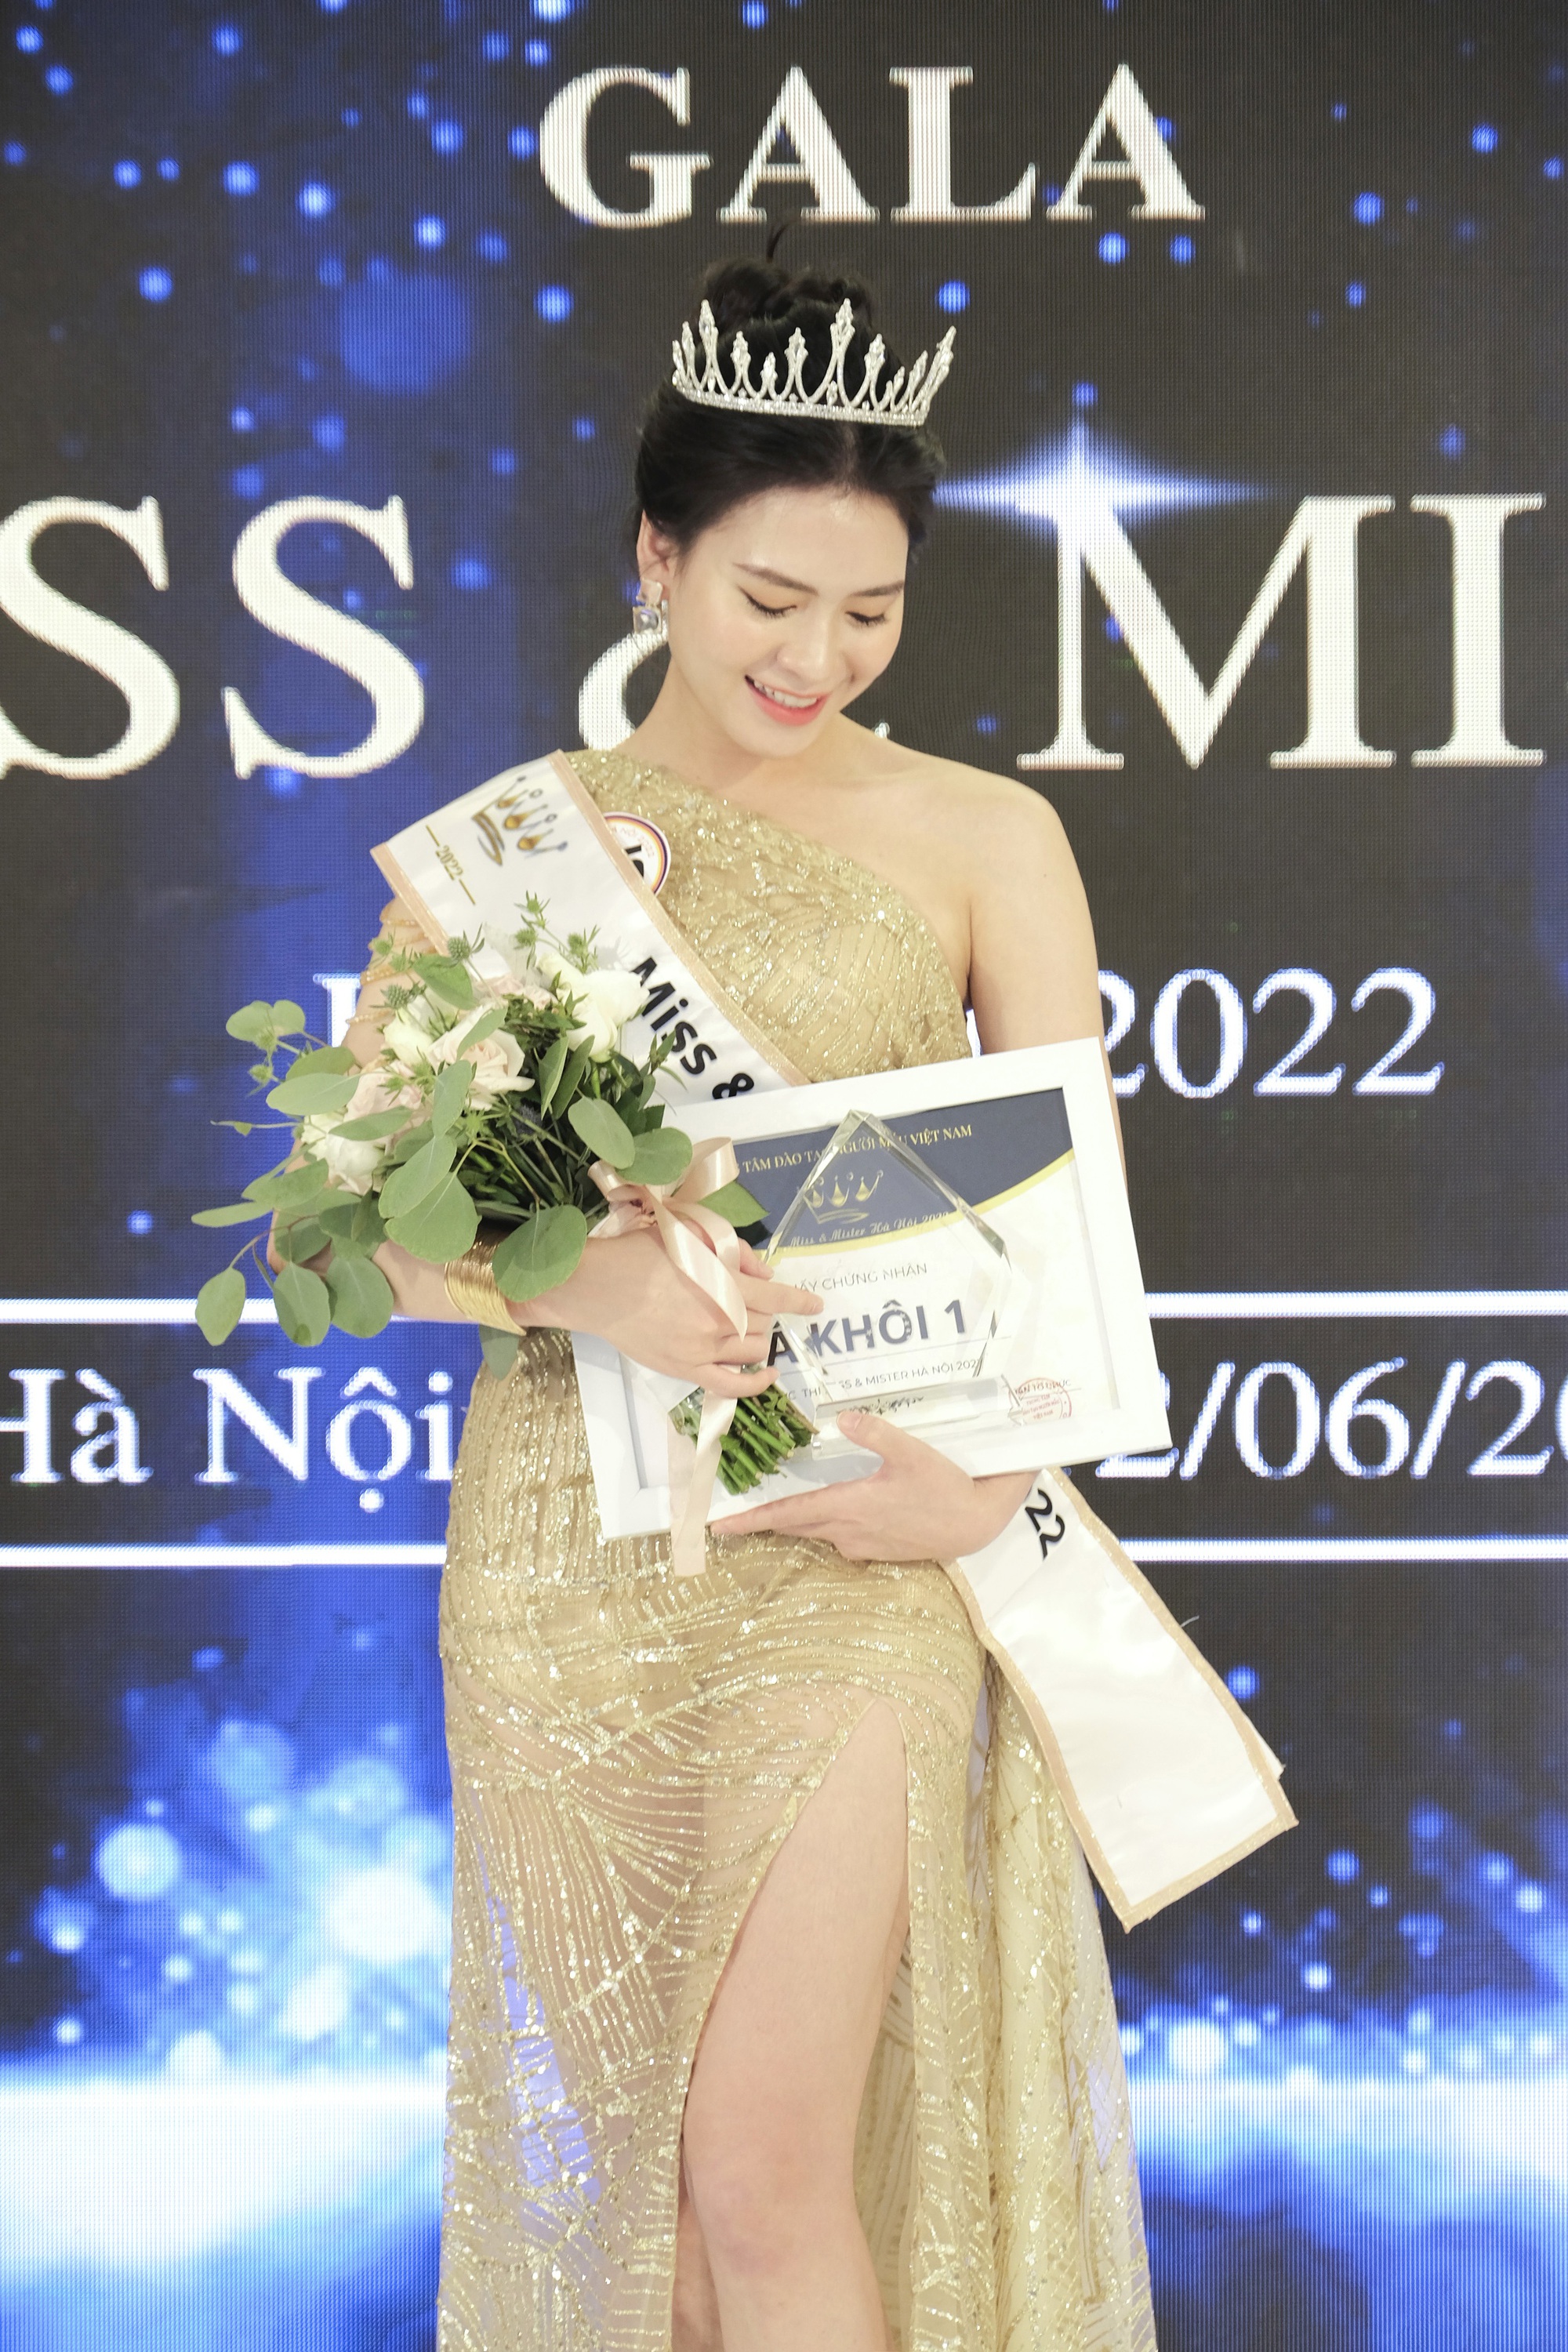 Nhan sắc nữ MC vừa giành ngôi Á khôi Miss & Mister Hà Nội 2022 - Ảnh 1.